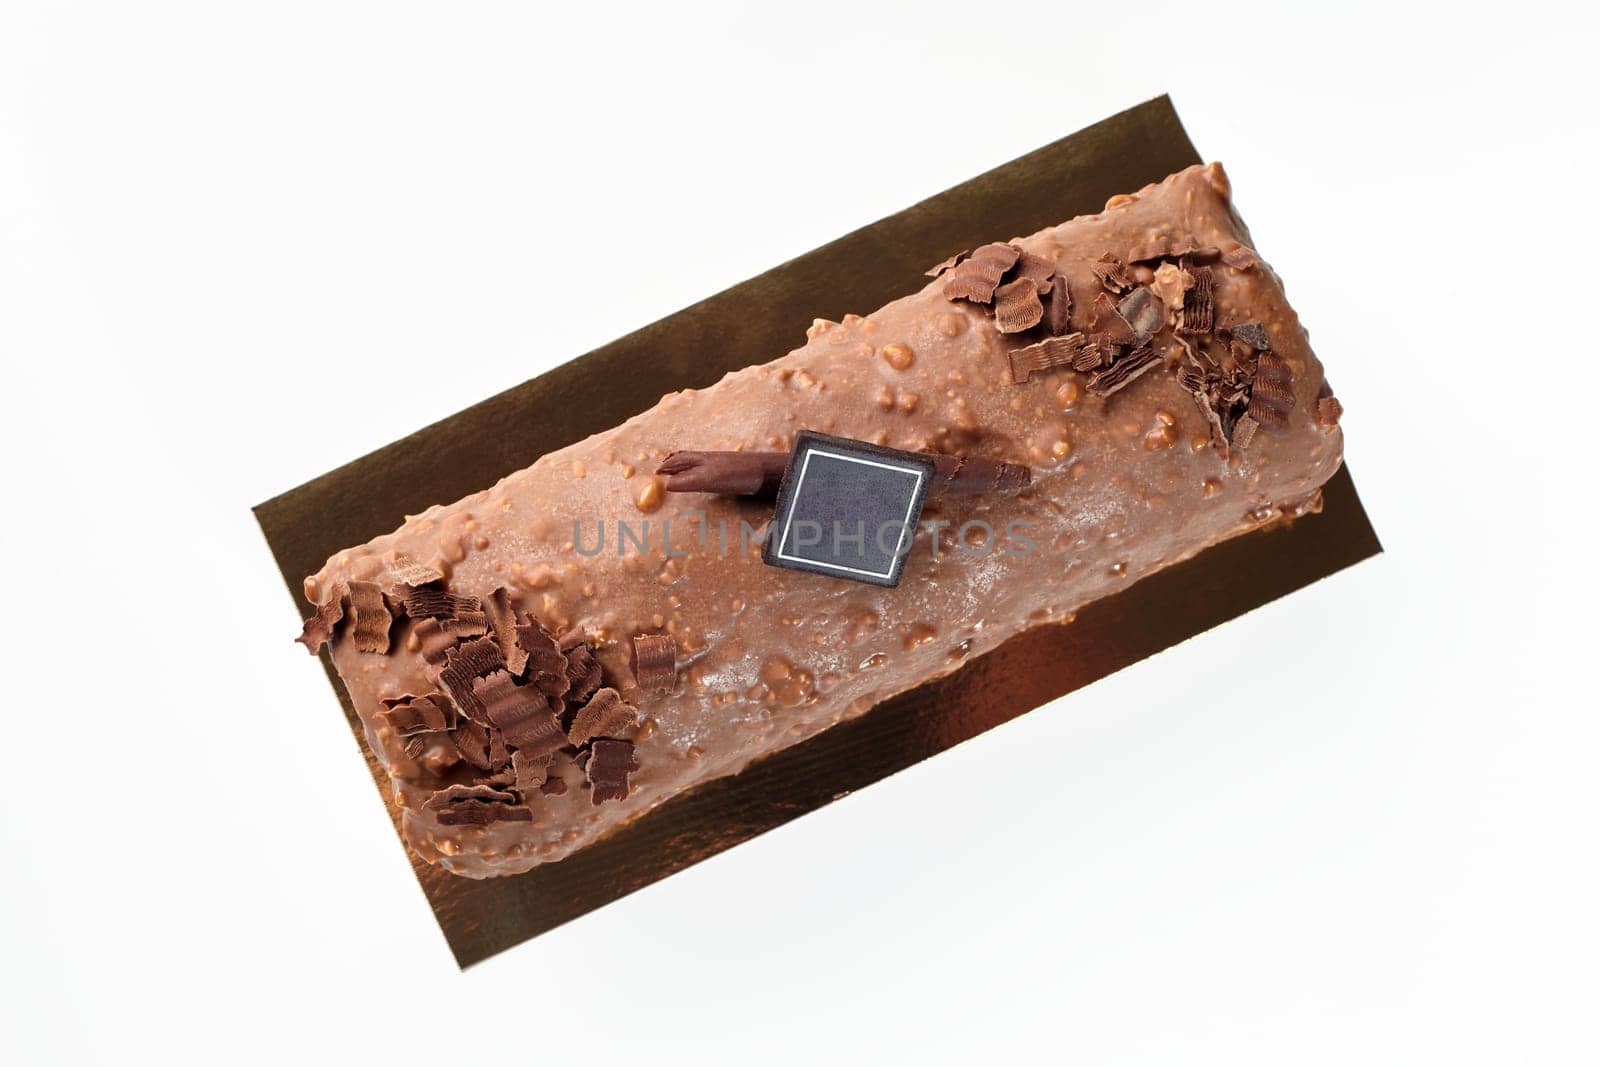 Artisan chocolate glazed loaf cake with hazelnut crumbs by nazarovsergey